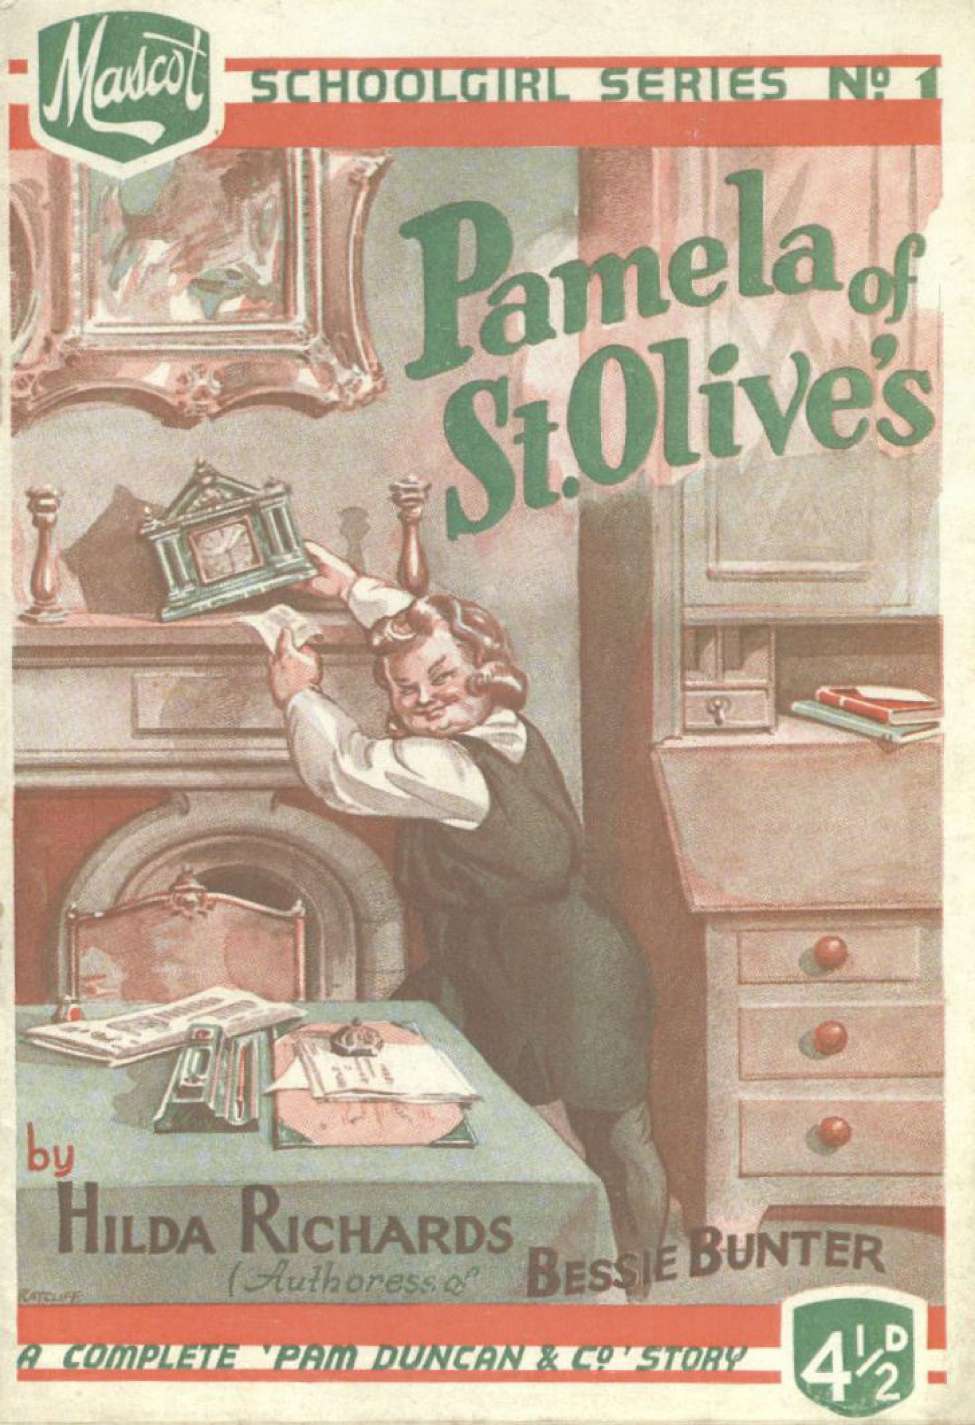 Book Cover For Mascot Schoolgirl Series 1 - Pamela of St. Olives